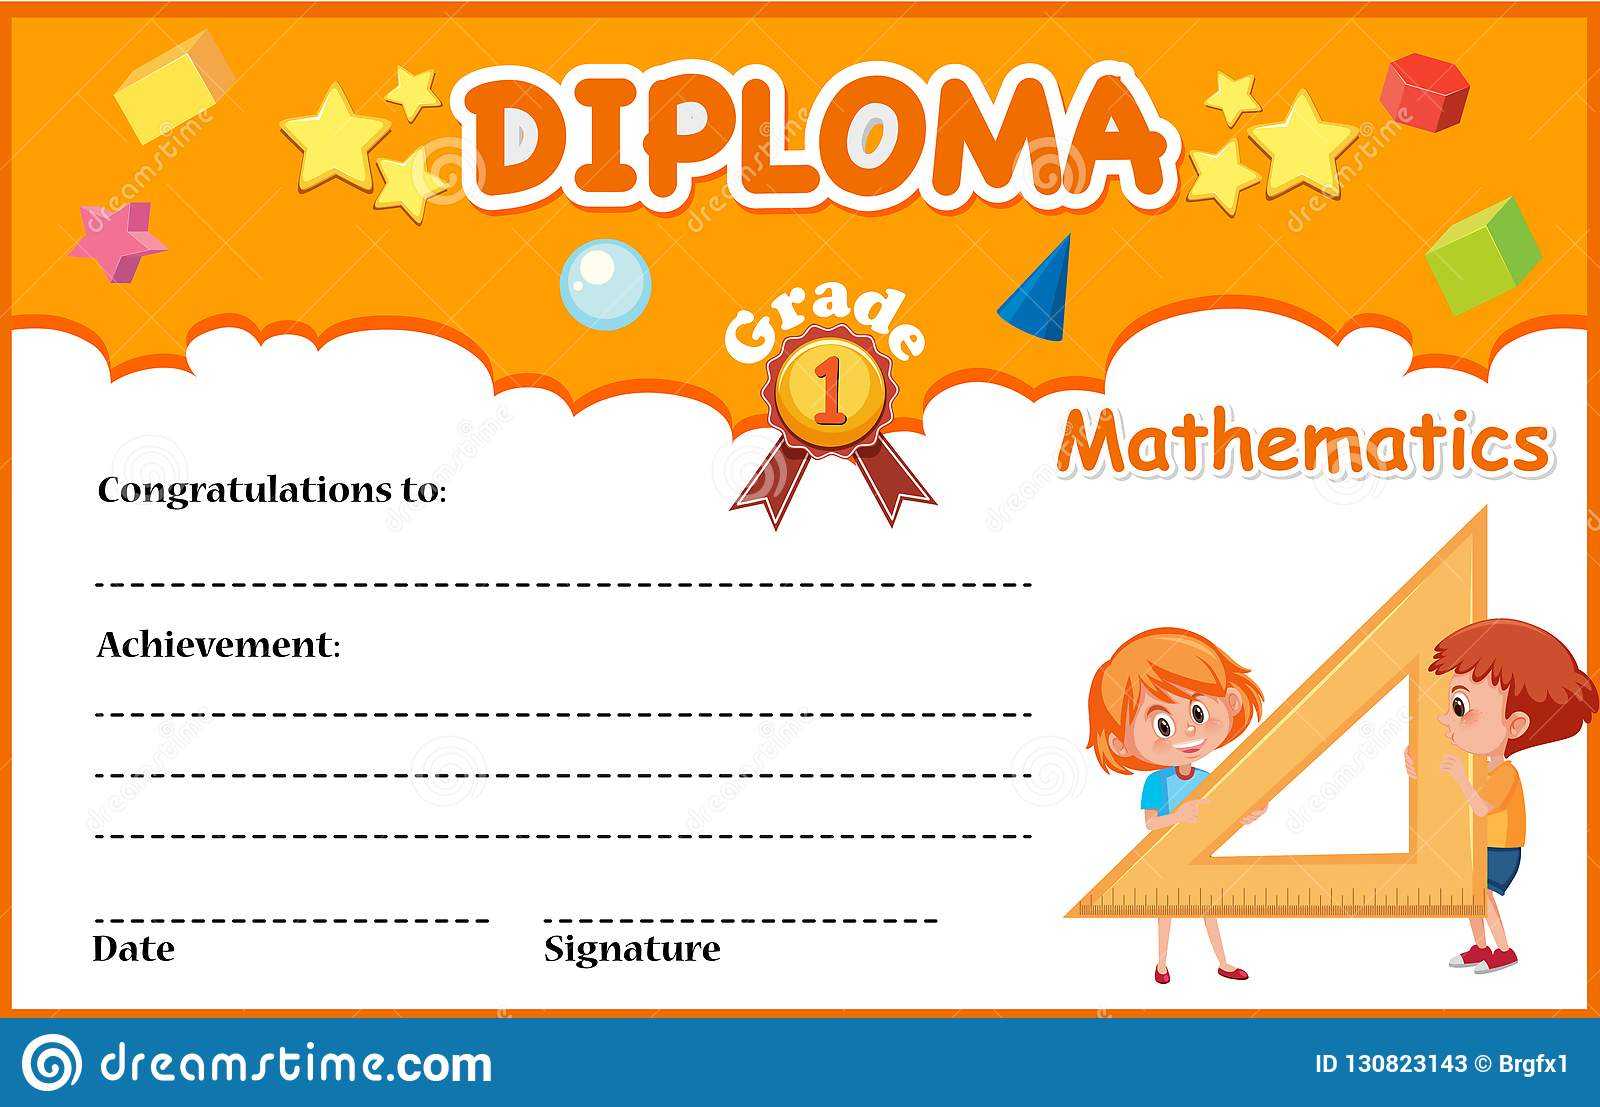 Mathematics Diploma Certificate Template Stock Vector Regarding Math Certificate Template